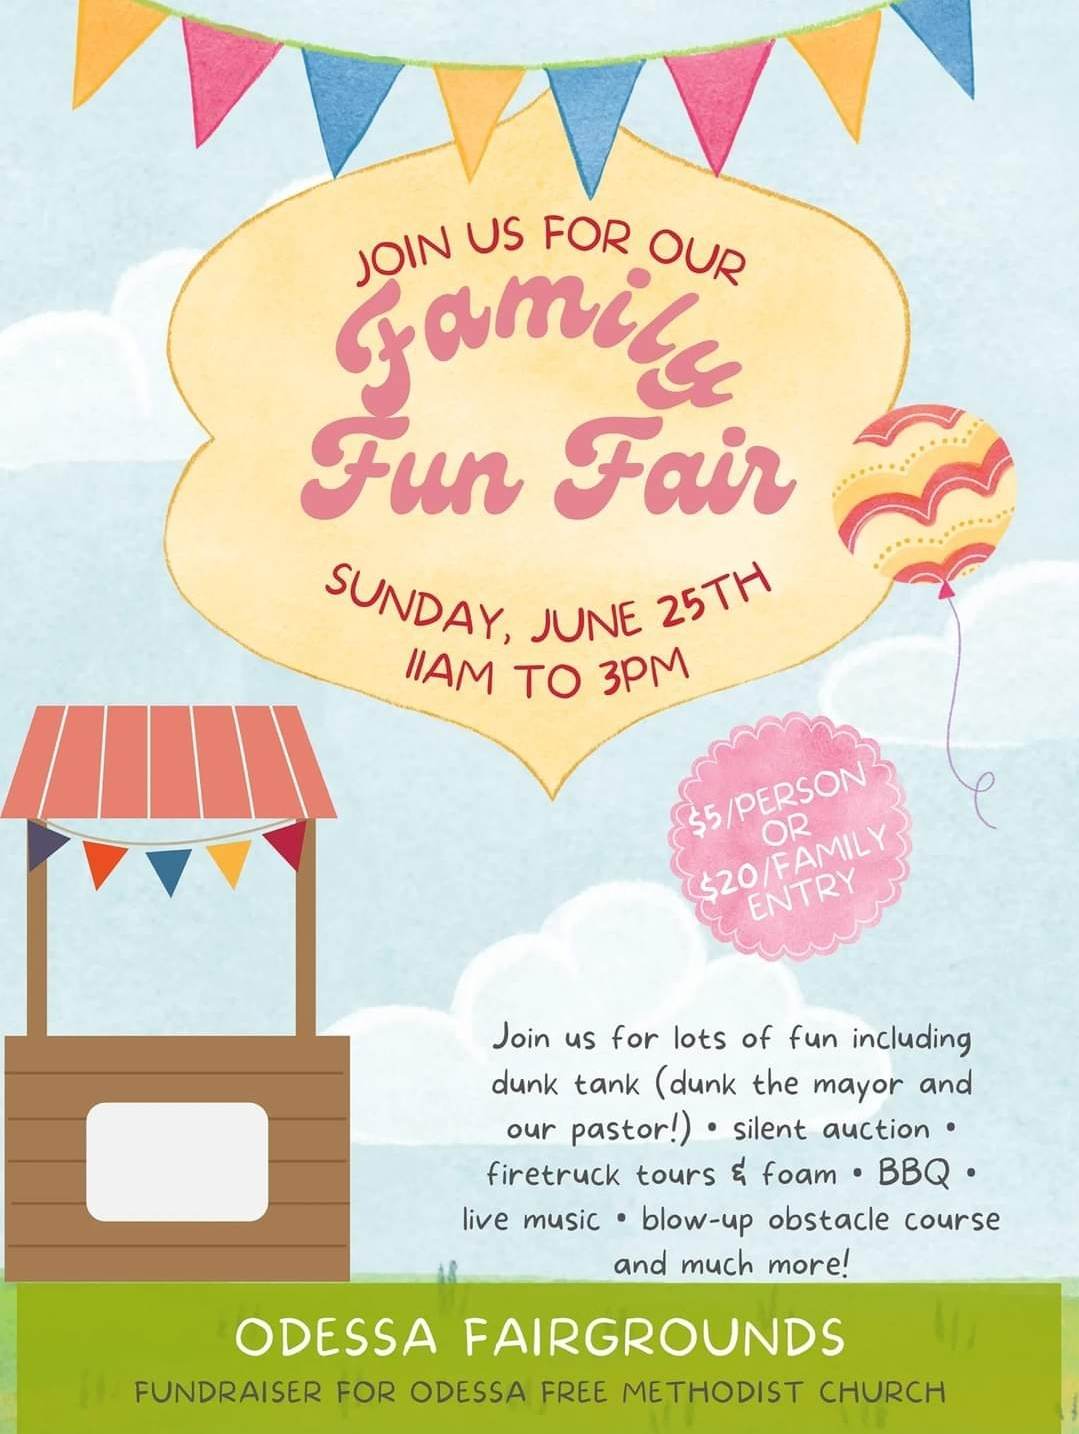 Family Fun Fair June 25th 11-3